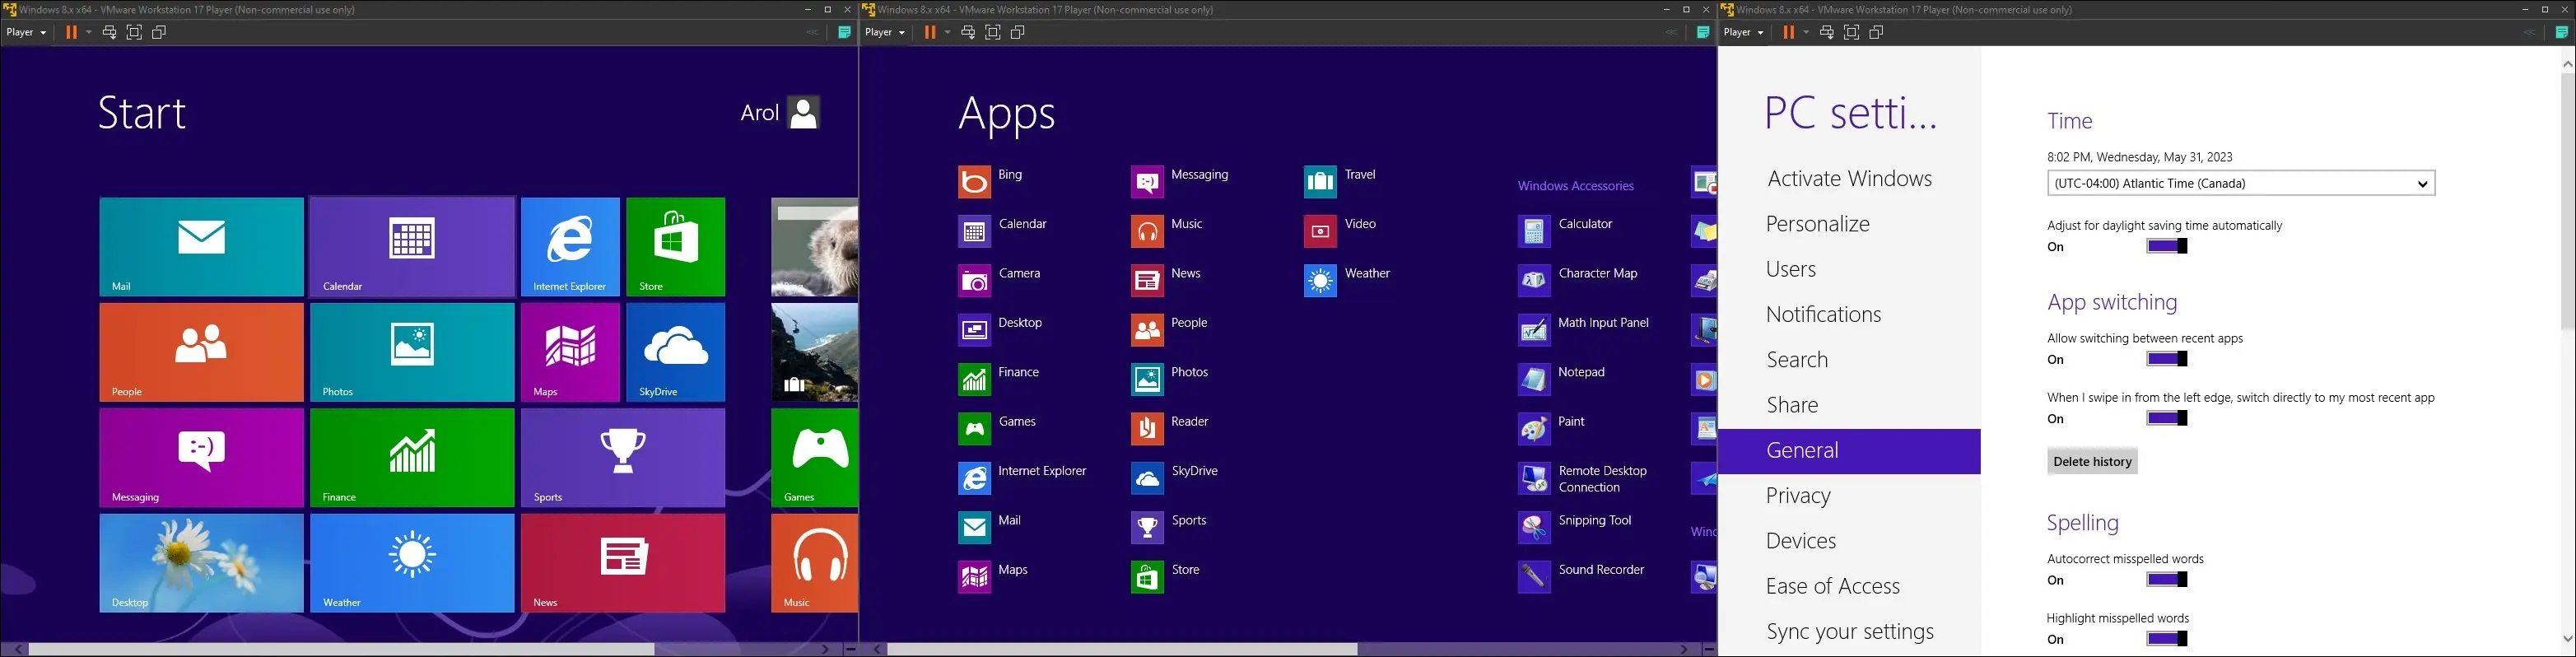 Başlat menüsünü, tüm uygulamalar menüsünü ve ayarlar uygulamasını gösteren bir sanal makinedeki Windows 8 görüntüleri